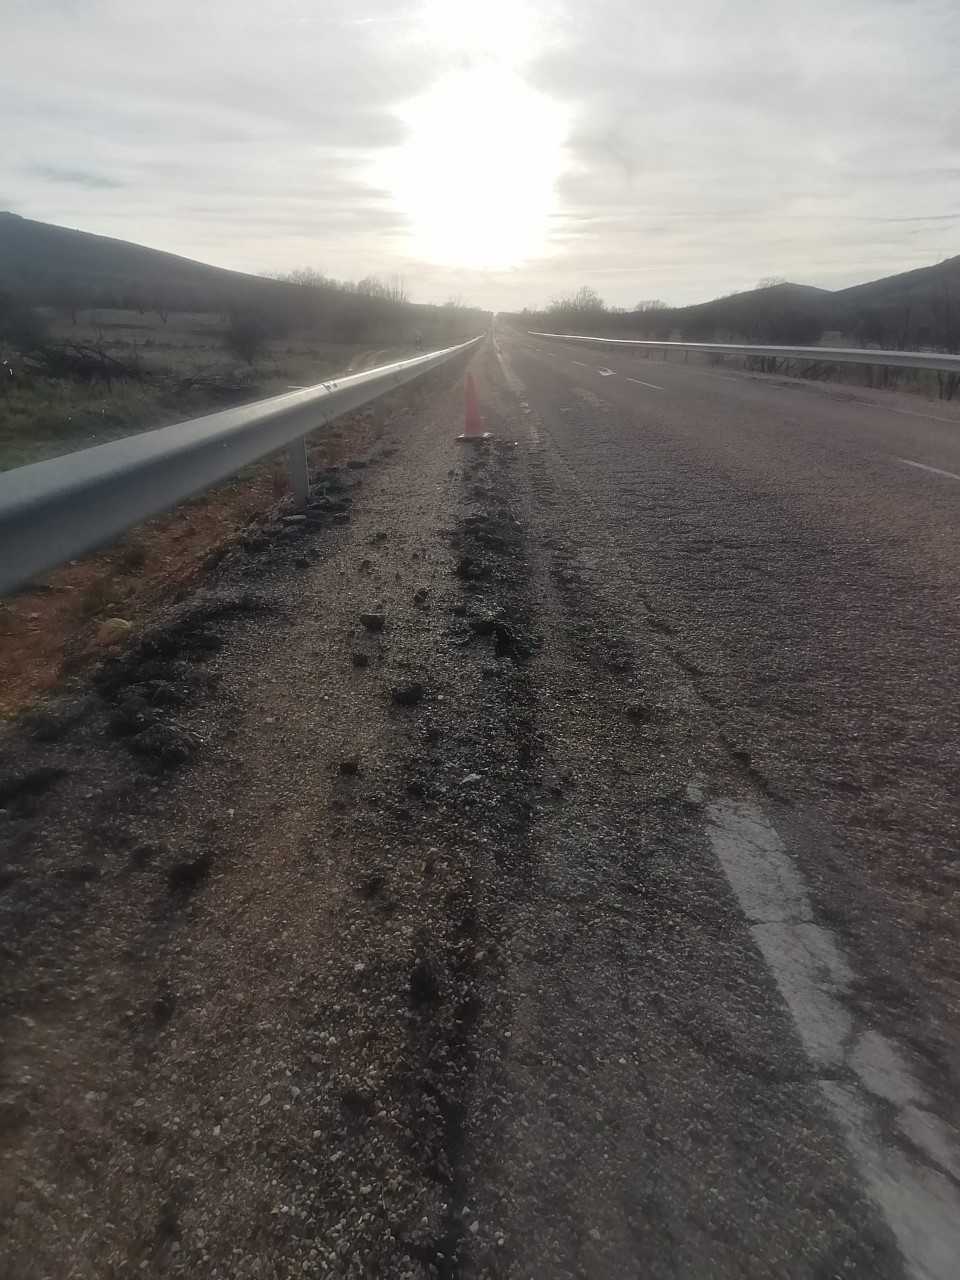 Denuncian el estado “lamentable” del tramo de la carretera N 631 entre Tábara y Rionegro del Puente